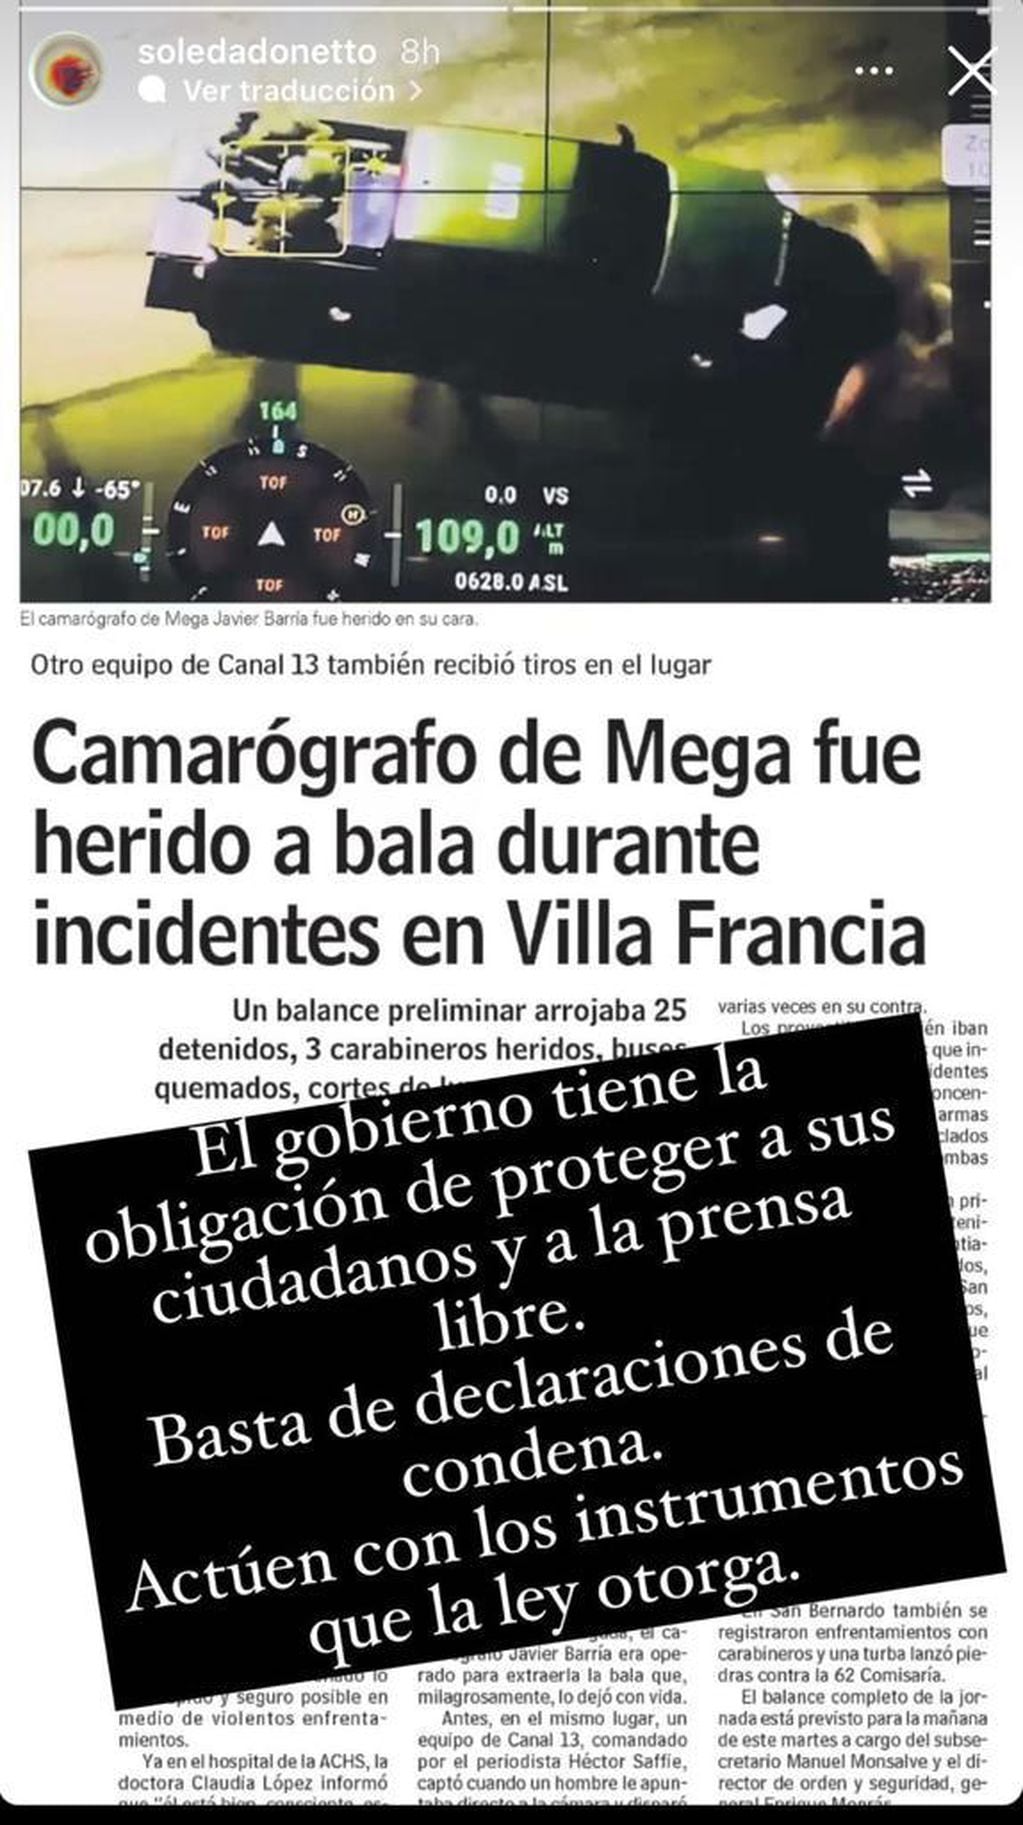 Soledad Onetto condenó ataque a camarógrafo de Mega y realizó un llamado a las autoridades: “Basta”